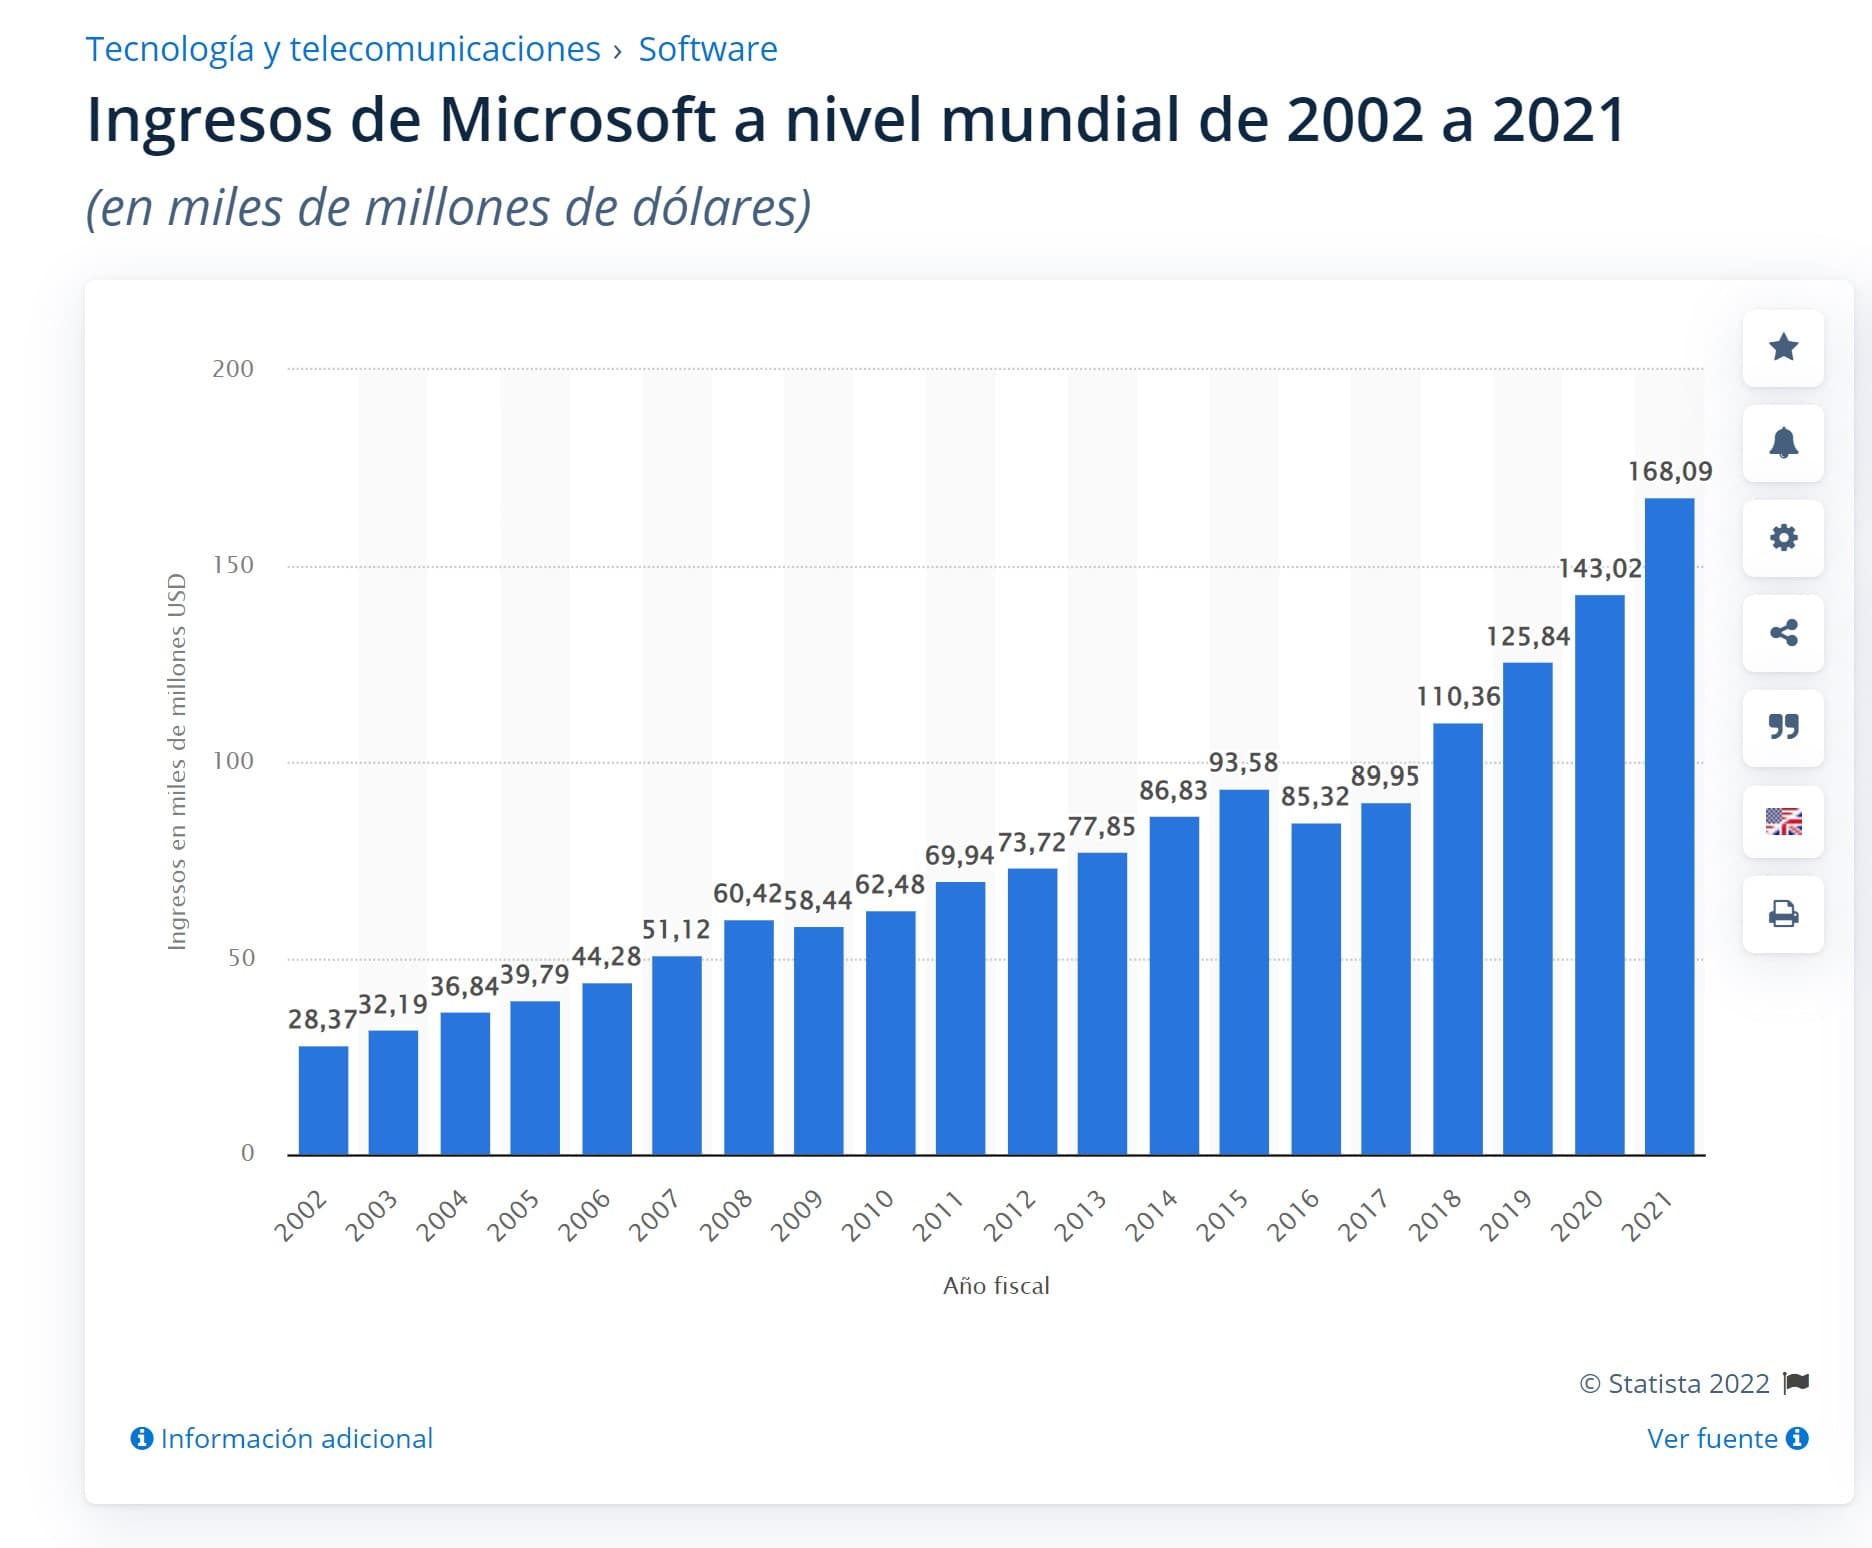 Evolución de los ingresos de Microsft (2002-2021)